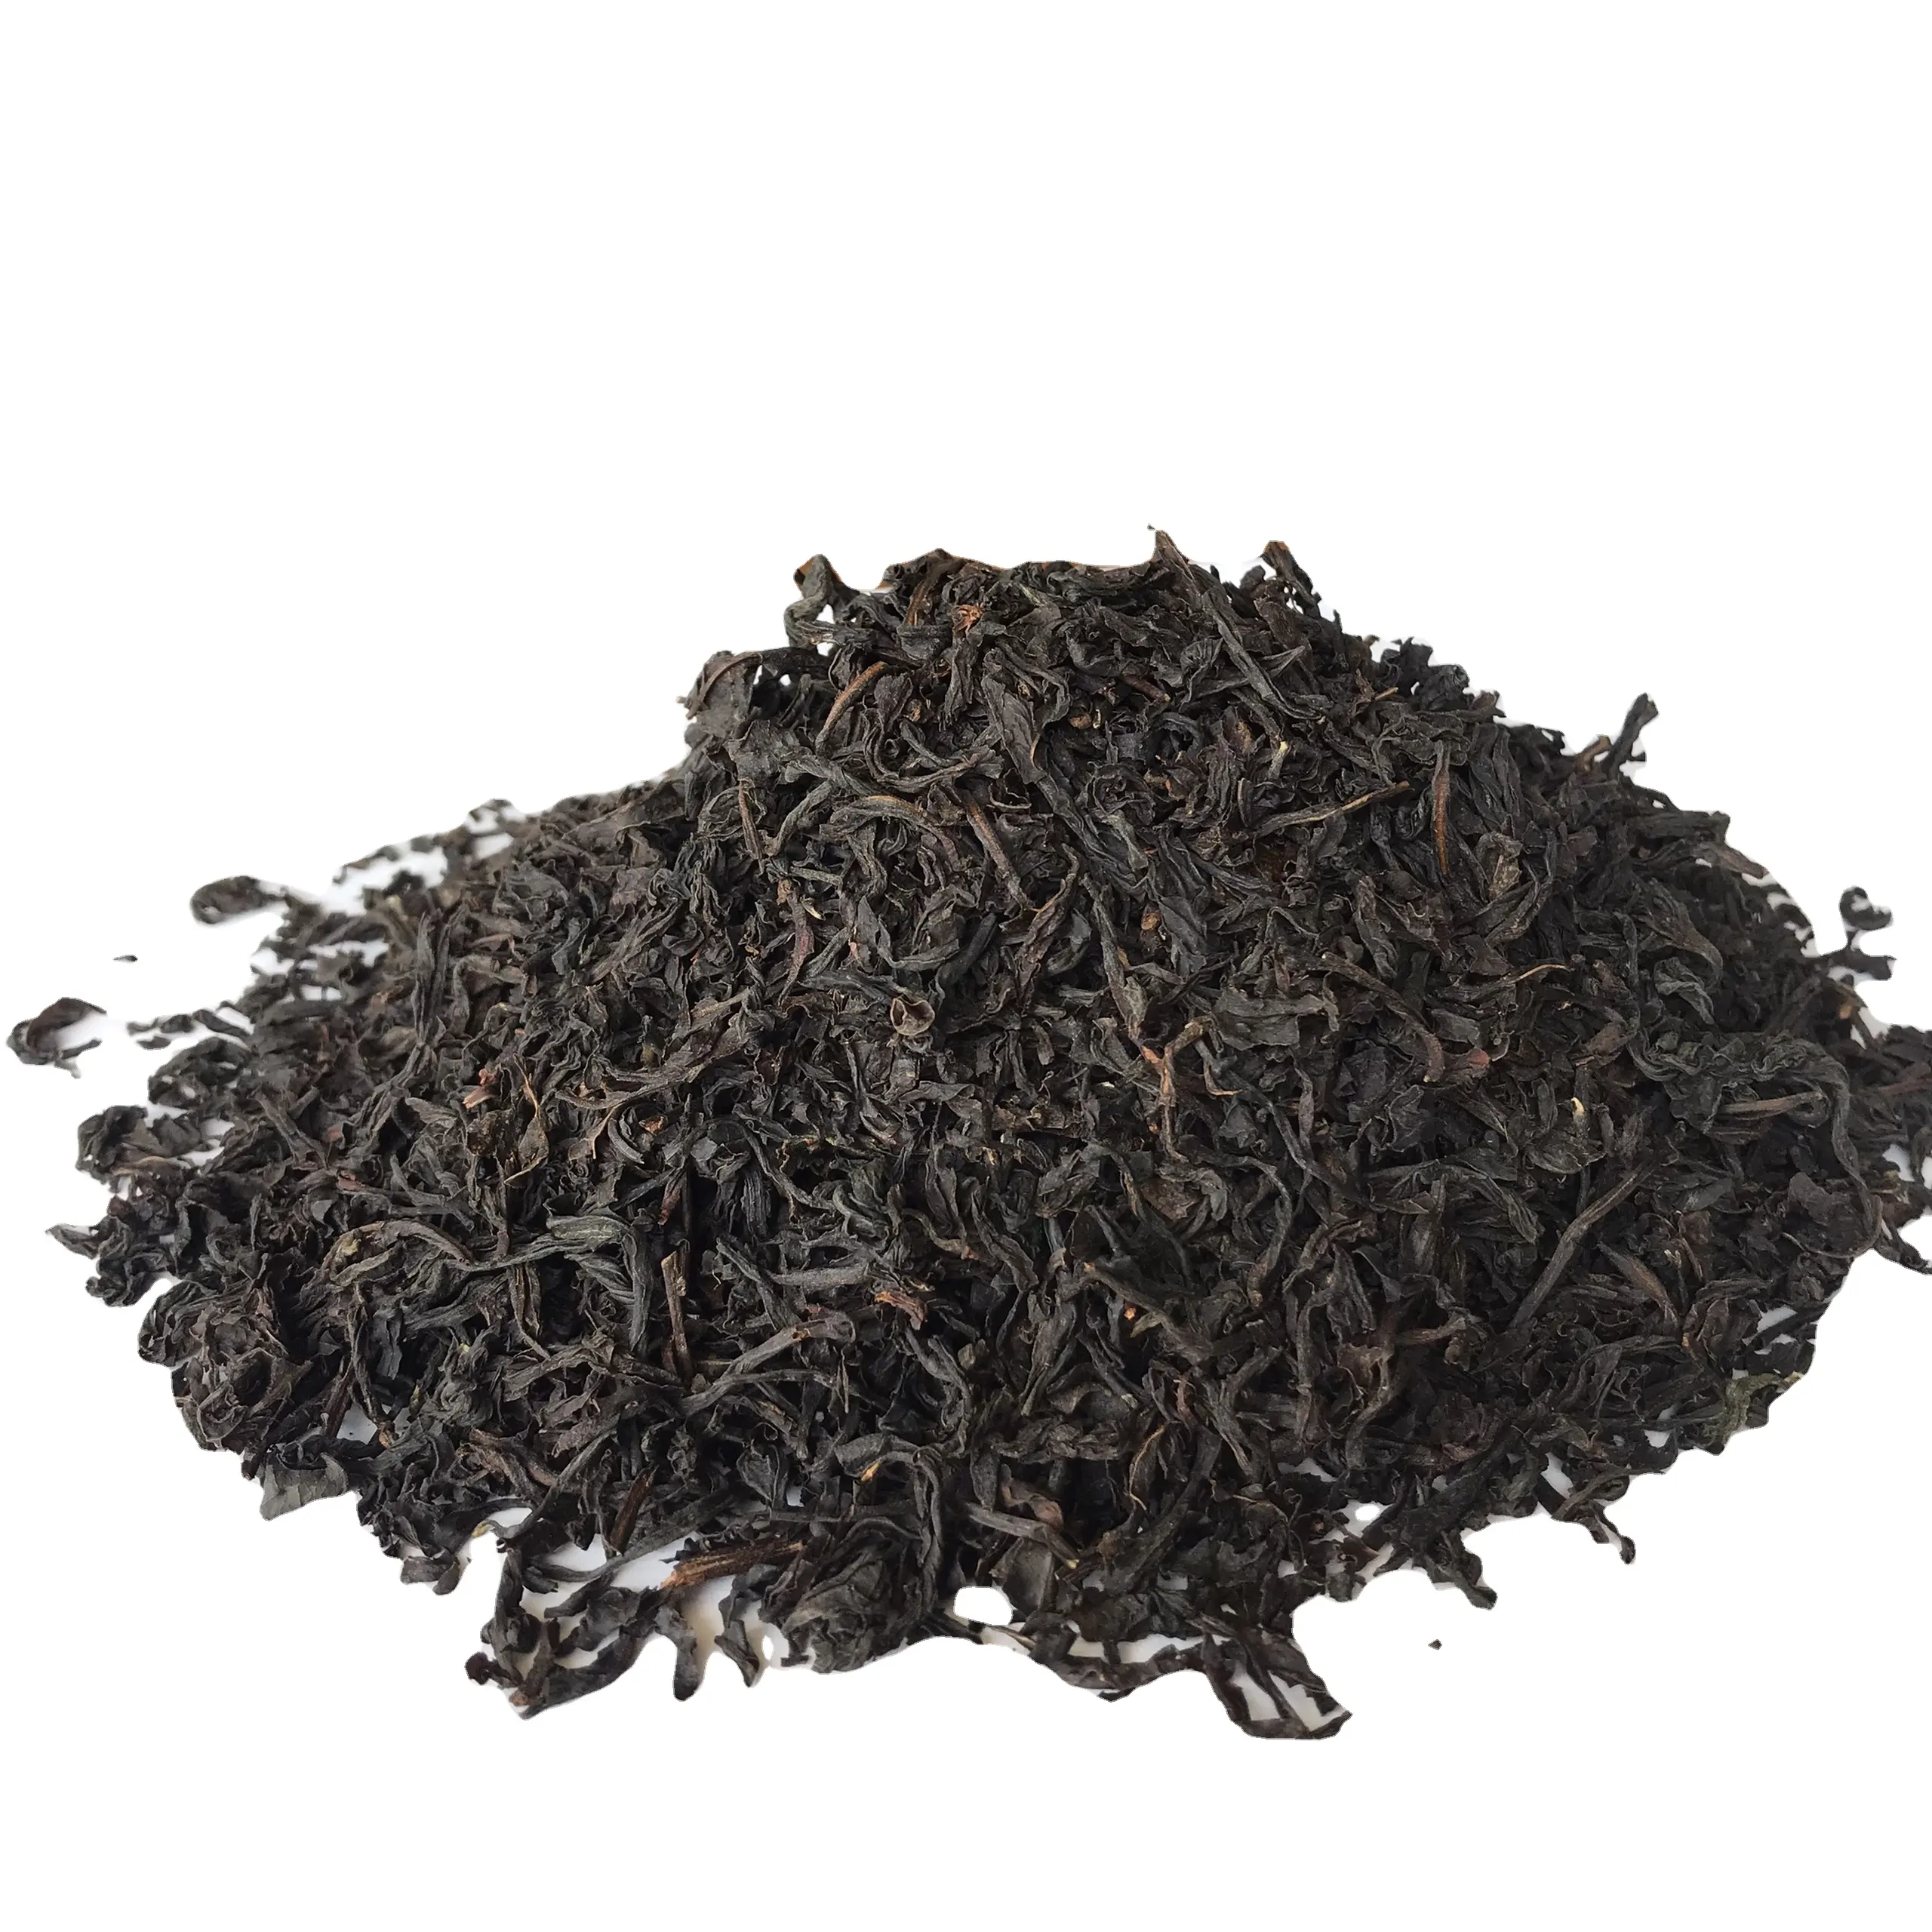 Sac à thé avec feuilles de thé noir, tourbillon Sri Lanka, 004, meilleur prix, emballage OEM, ODM, paquet d'emballage, vente en gros